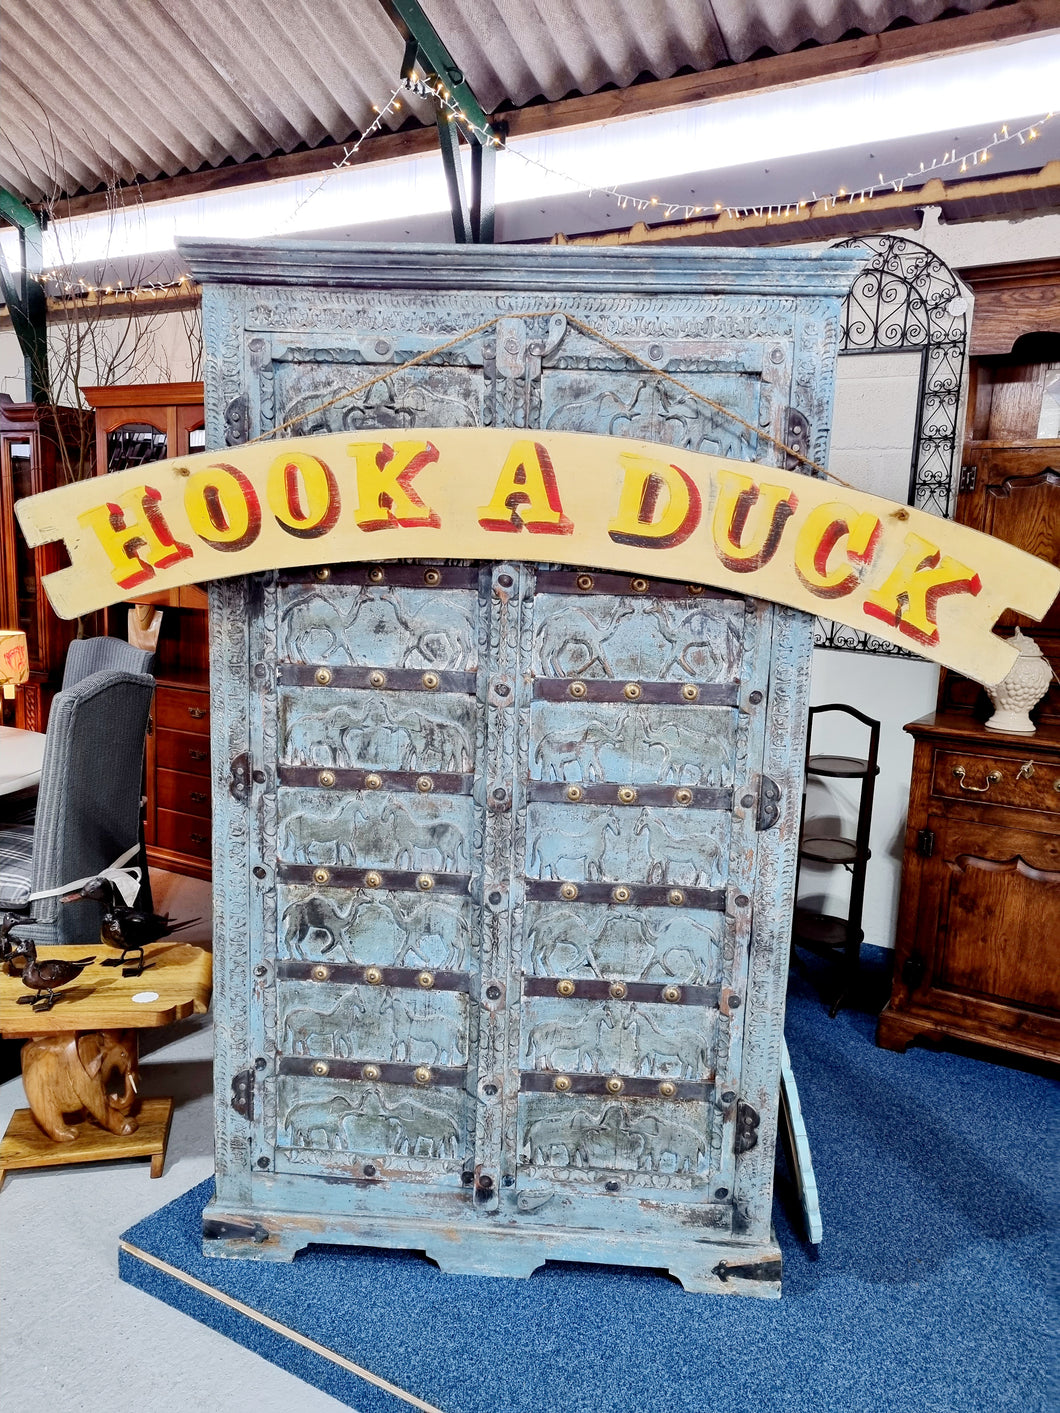 Hook A Duck Original Artwork Banner By A Circus Sign Writer